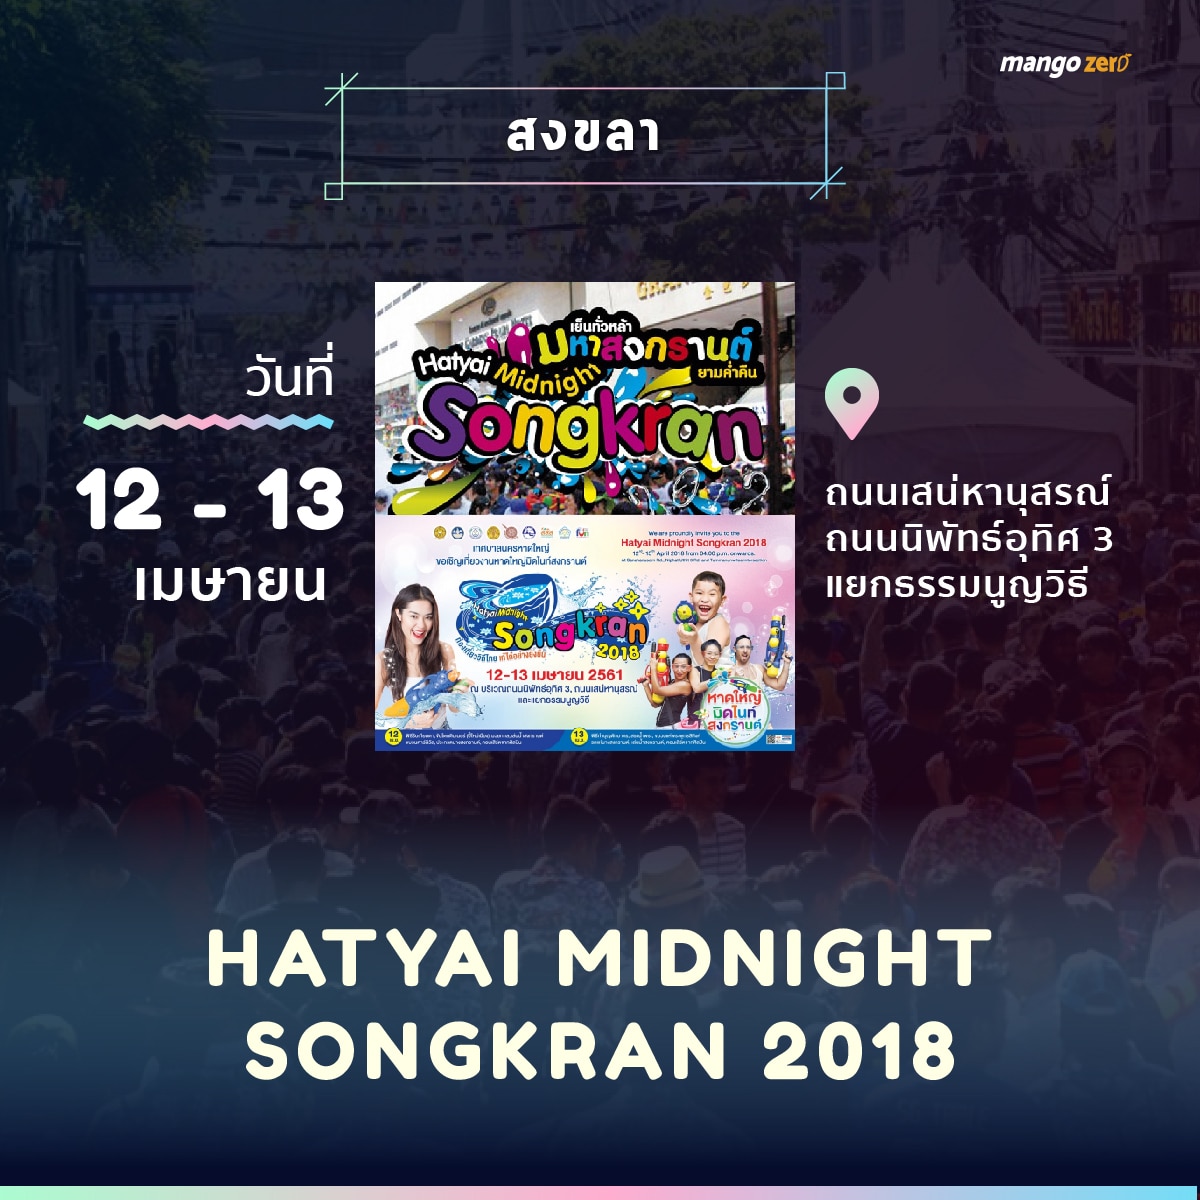 songkran-2018-events-thailand-02